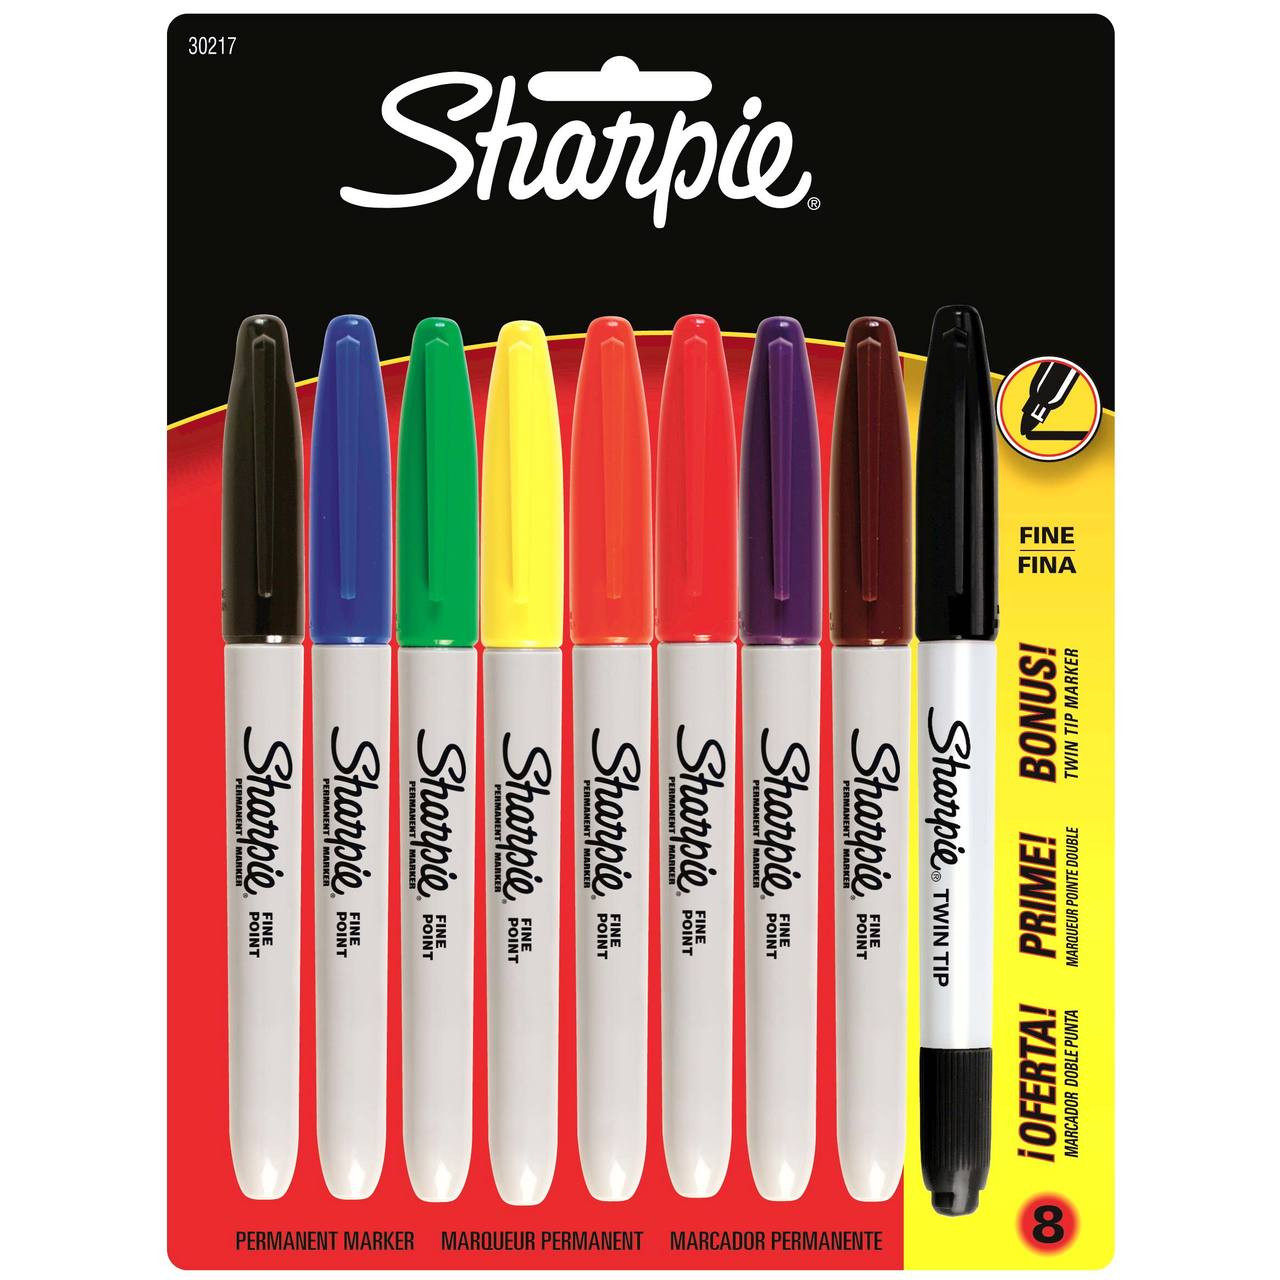 Sharpie Fine Marker - Black, Red, Blue, Green, Orange, Purple